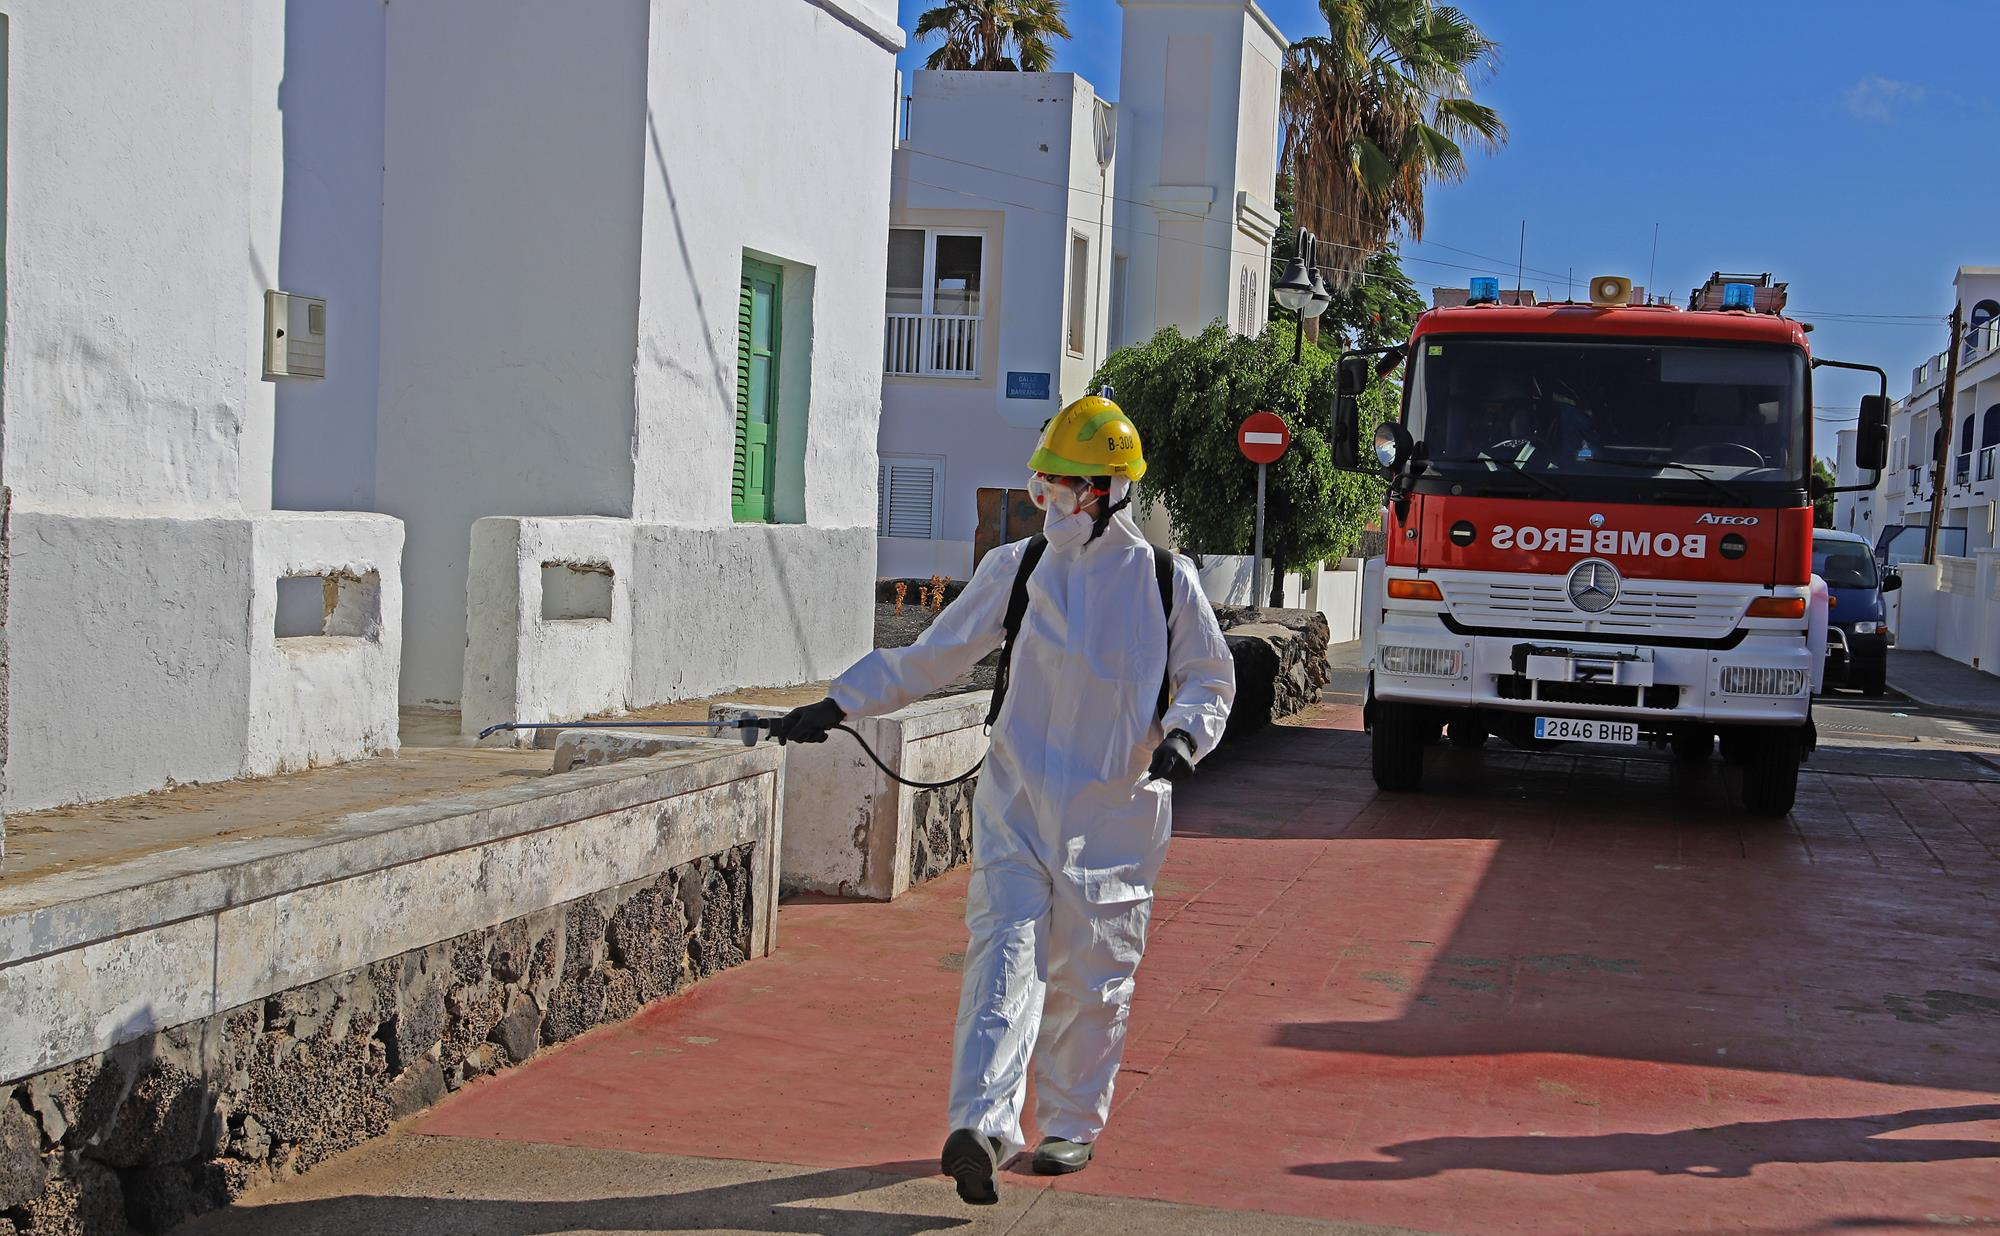 Limpieza y desinfección para prevenir la Covid-19. Lanzarote